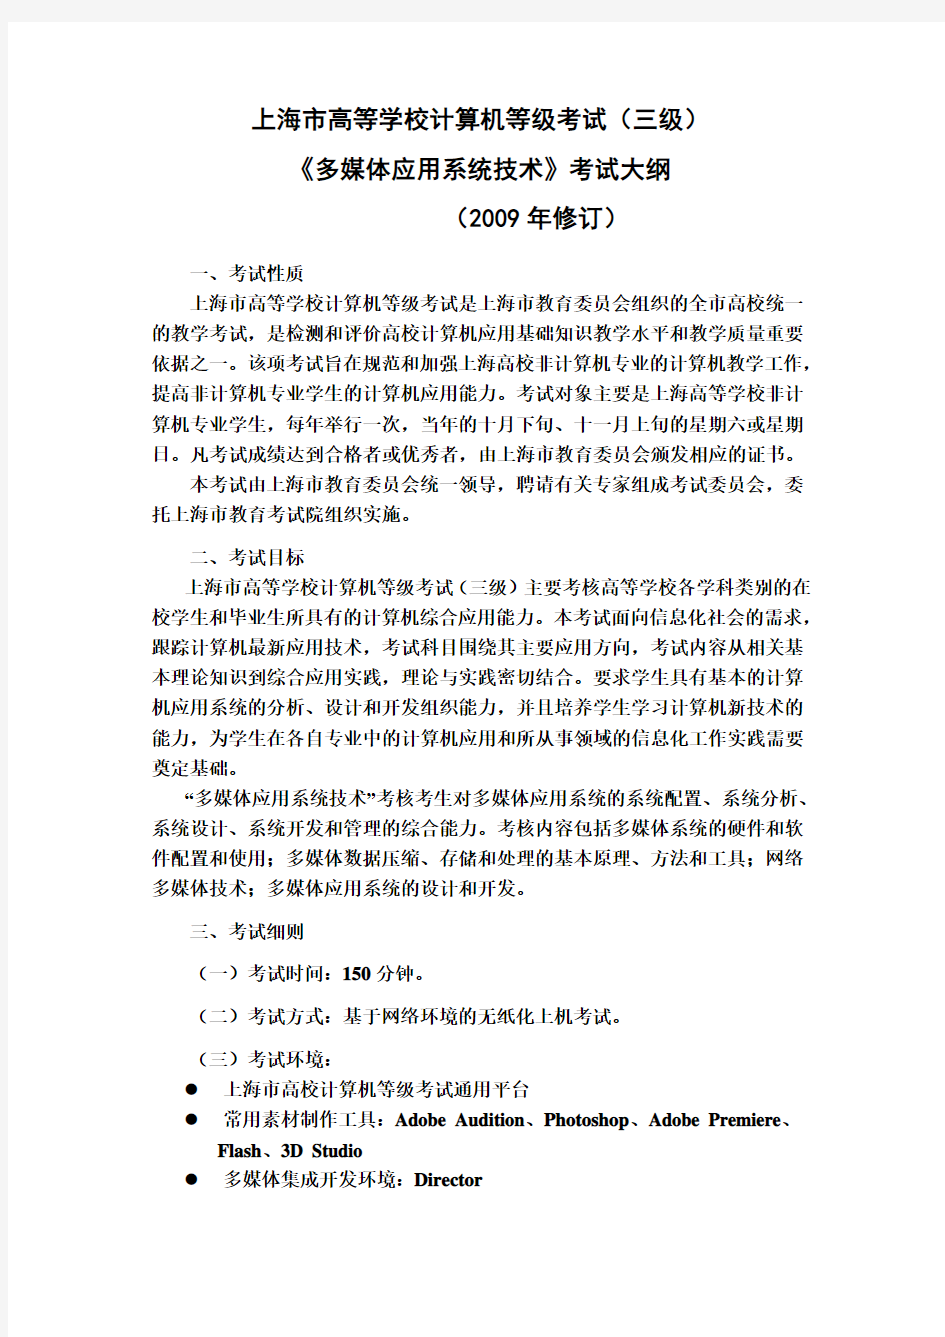 上海市高等学校计算机等级考试(00001)